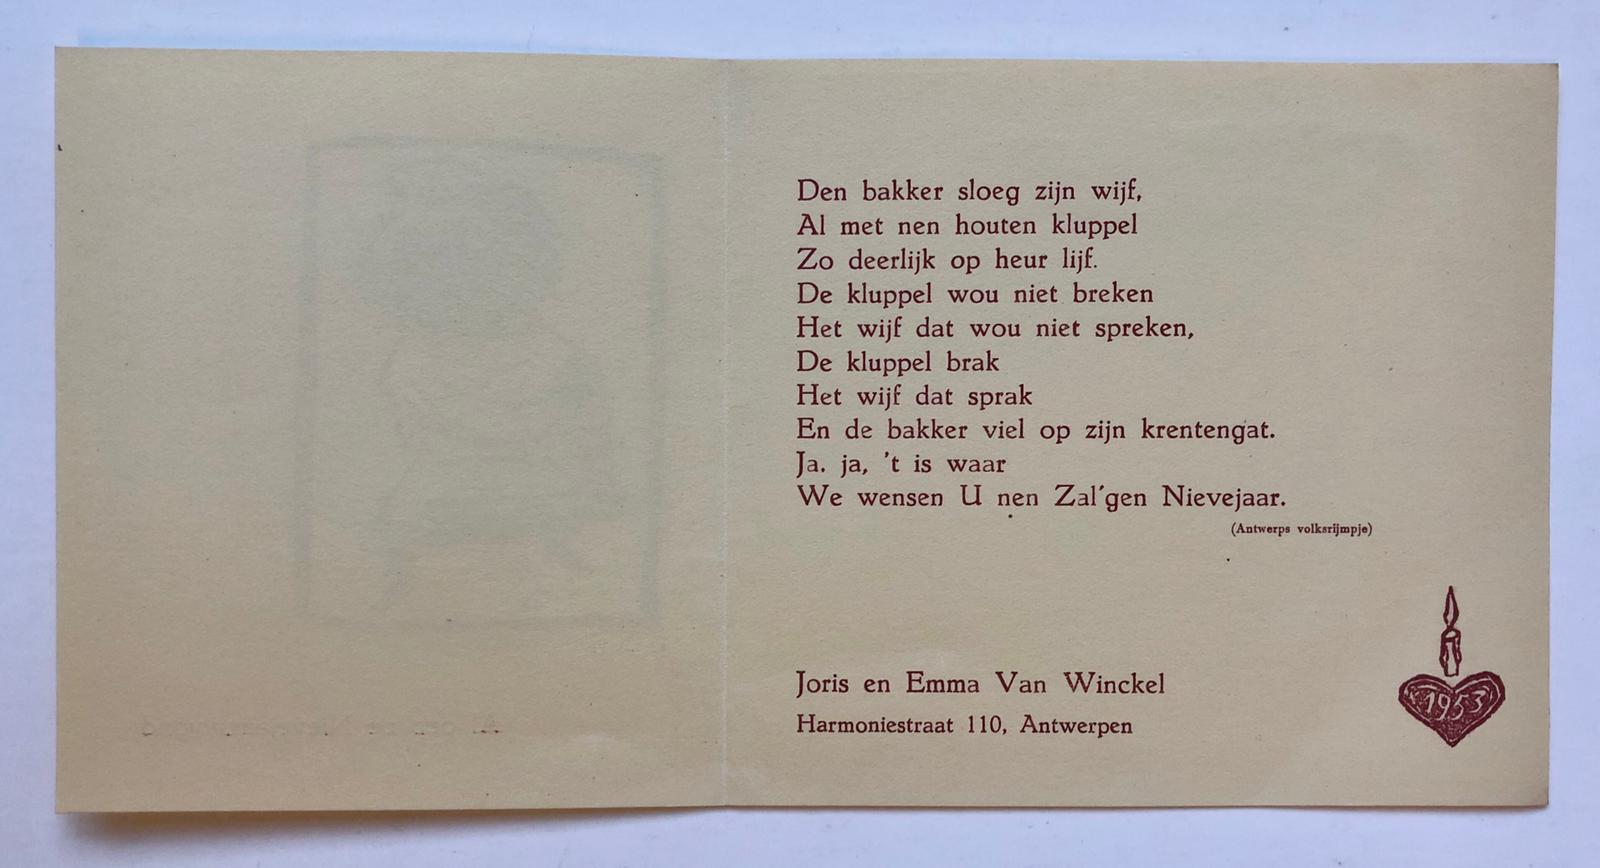 [New Years Wish Belgium 1953] Nieuwjaarswens van Joris en Emma van Winckel, Antwerpen 1953, gedrukt, 2 p.